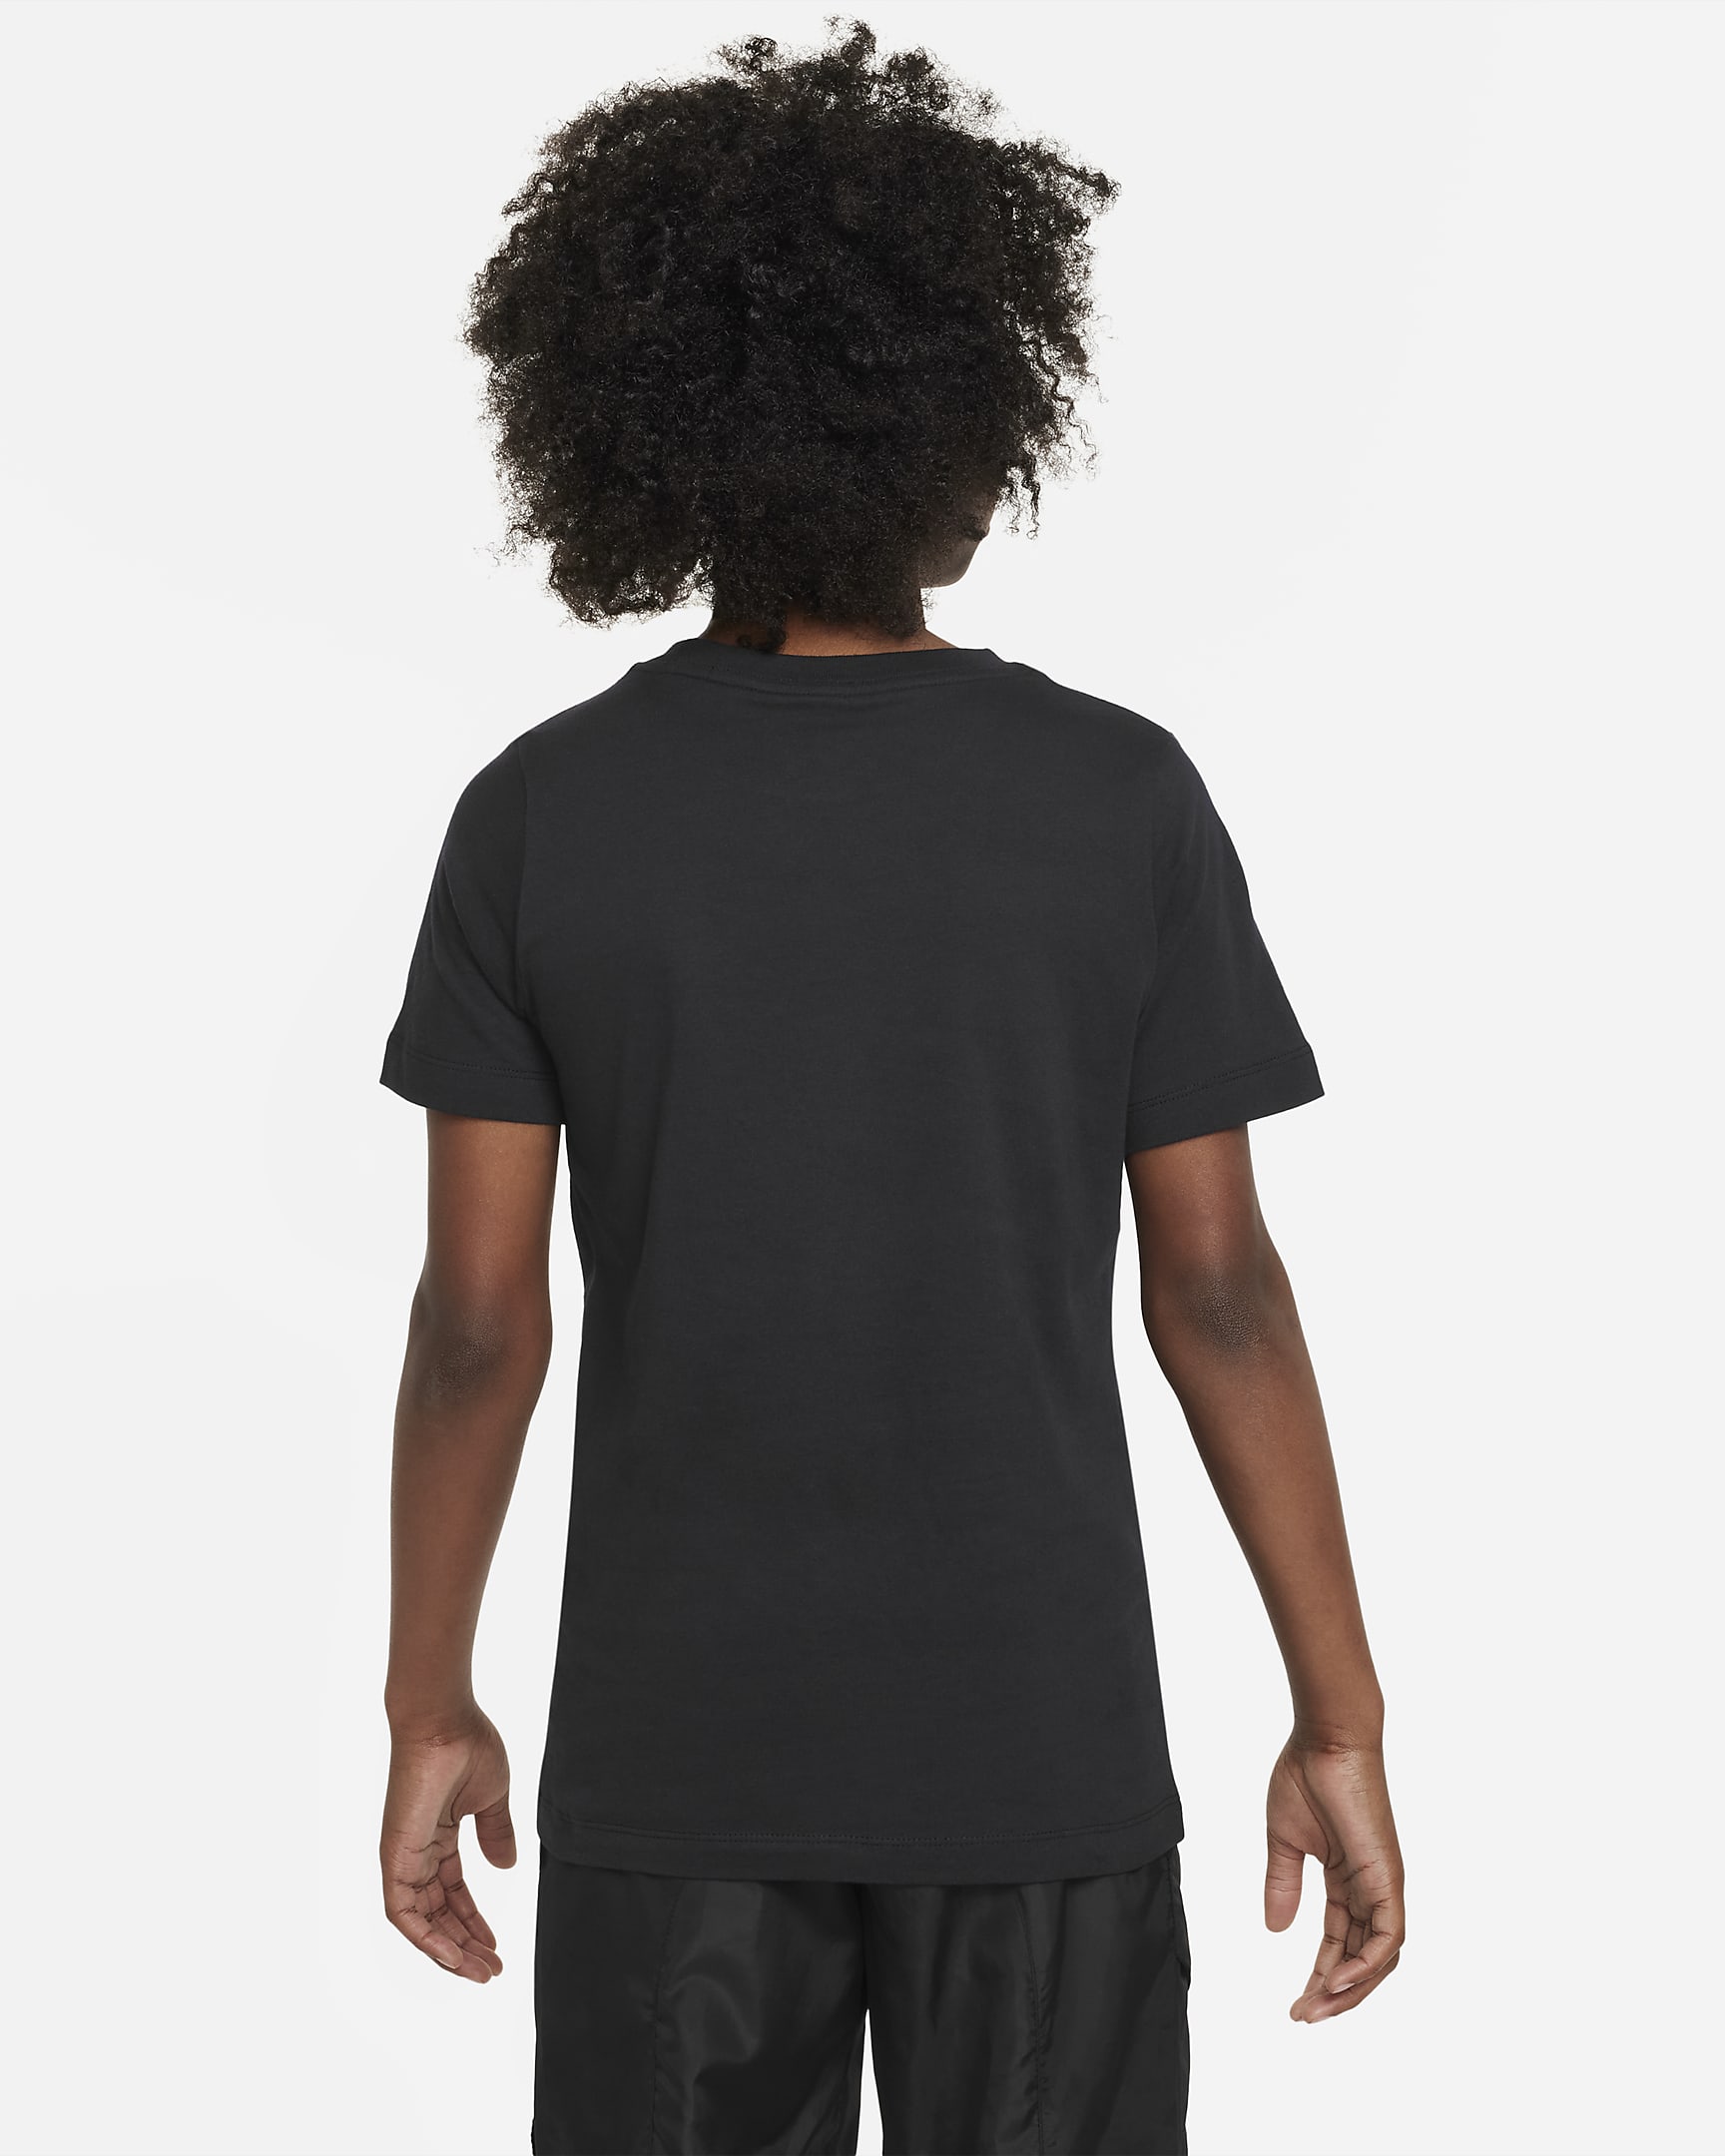 Chelsea FC Crest Big Kids' Nike T-Shirt. Nike.com